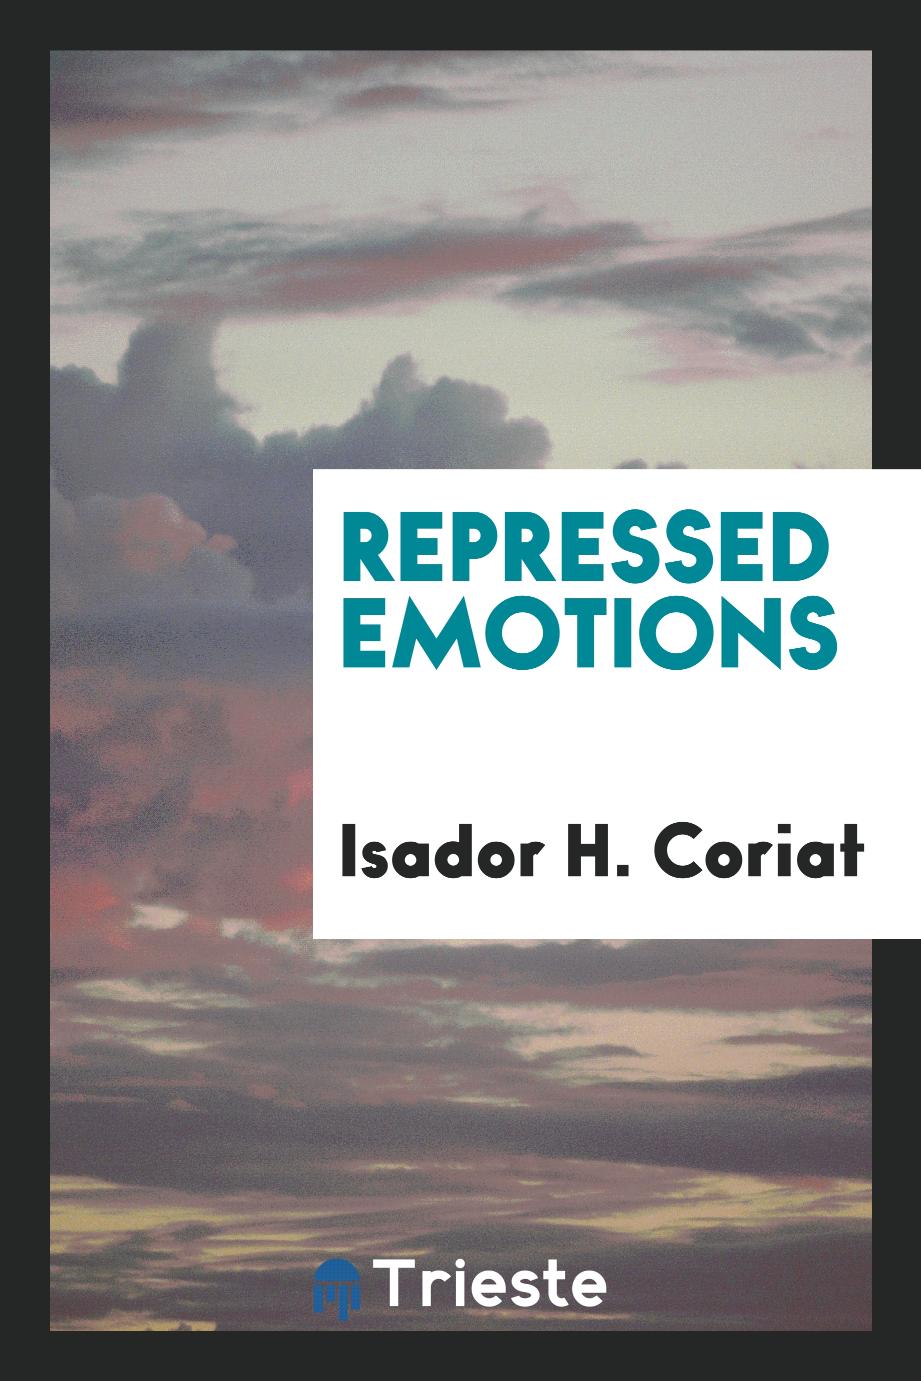 Repressed emotions